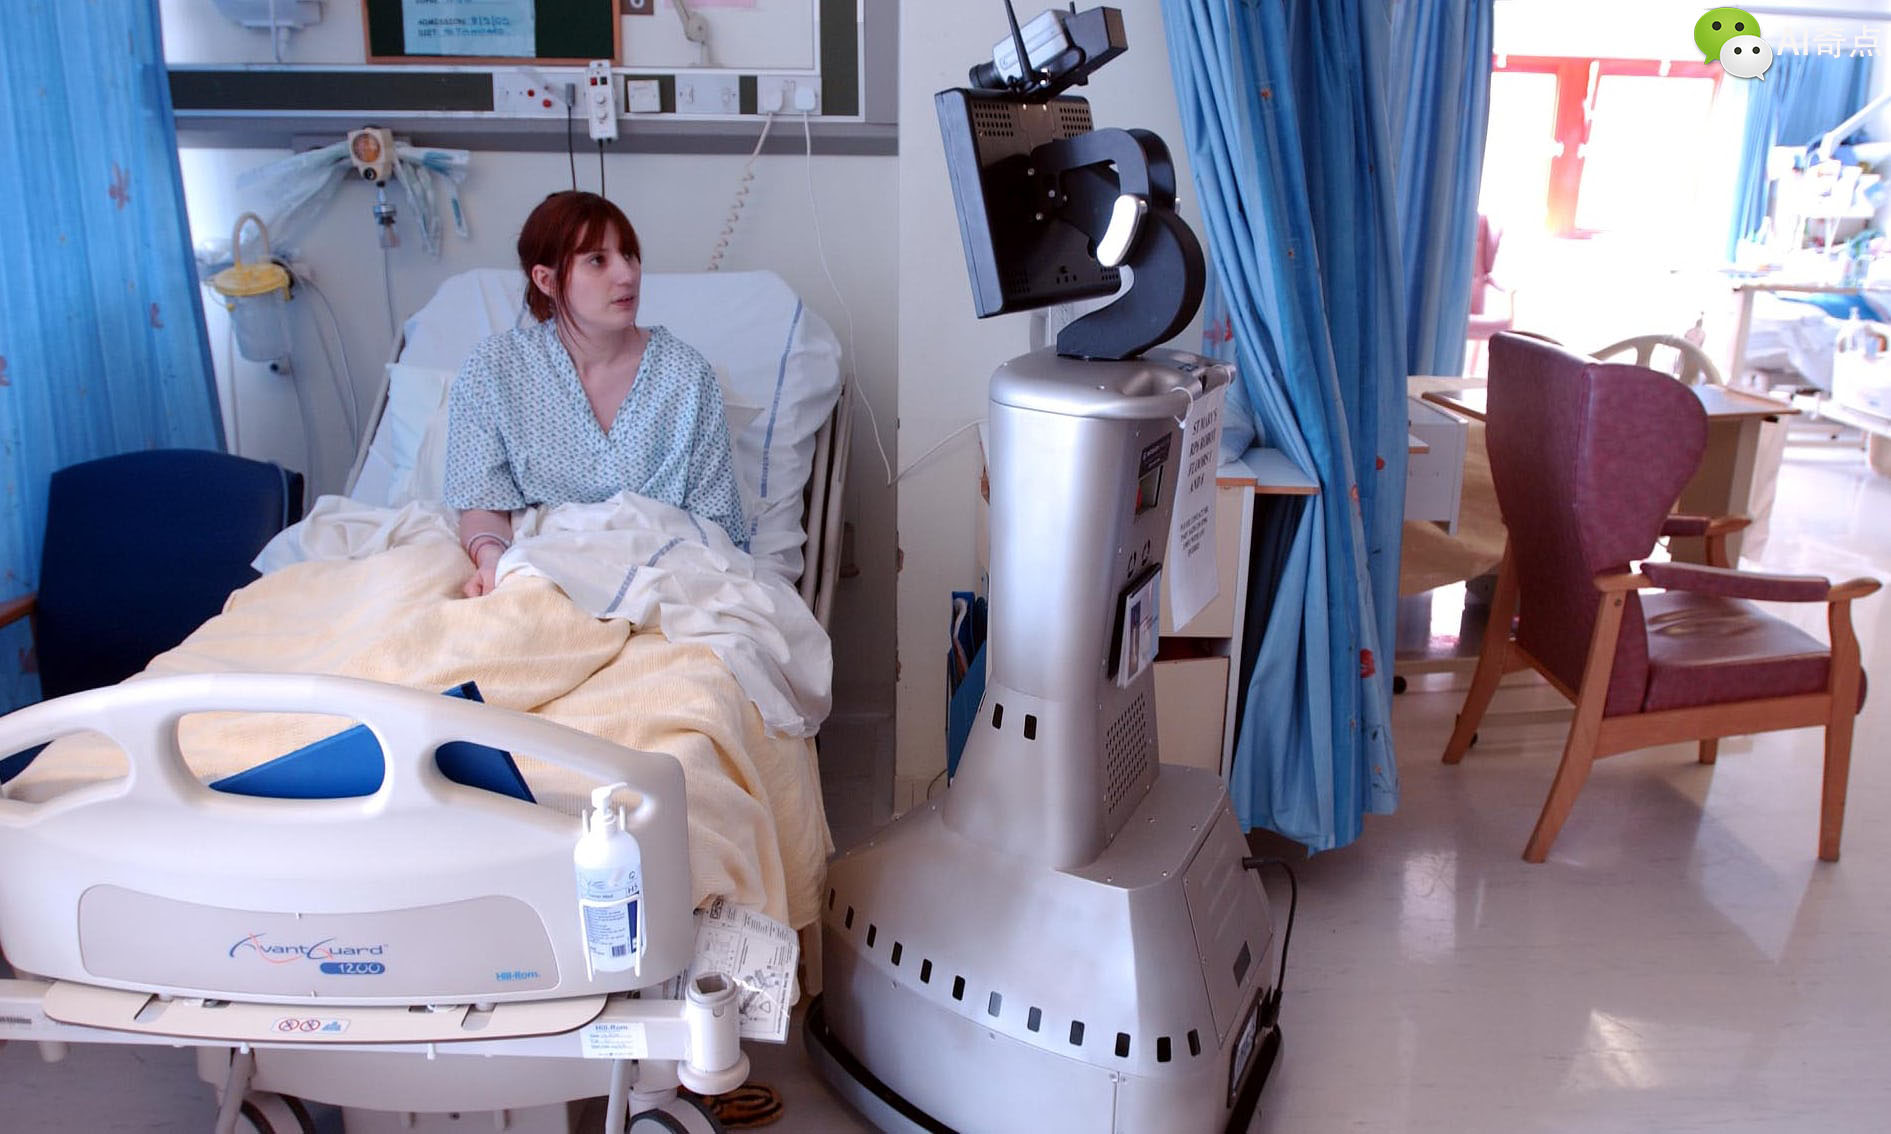 目前该机器人可以承担医生,护士,医疗助理和行政人员完成各种任务